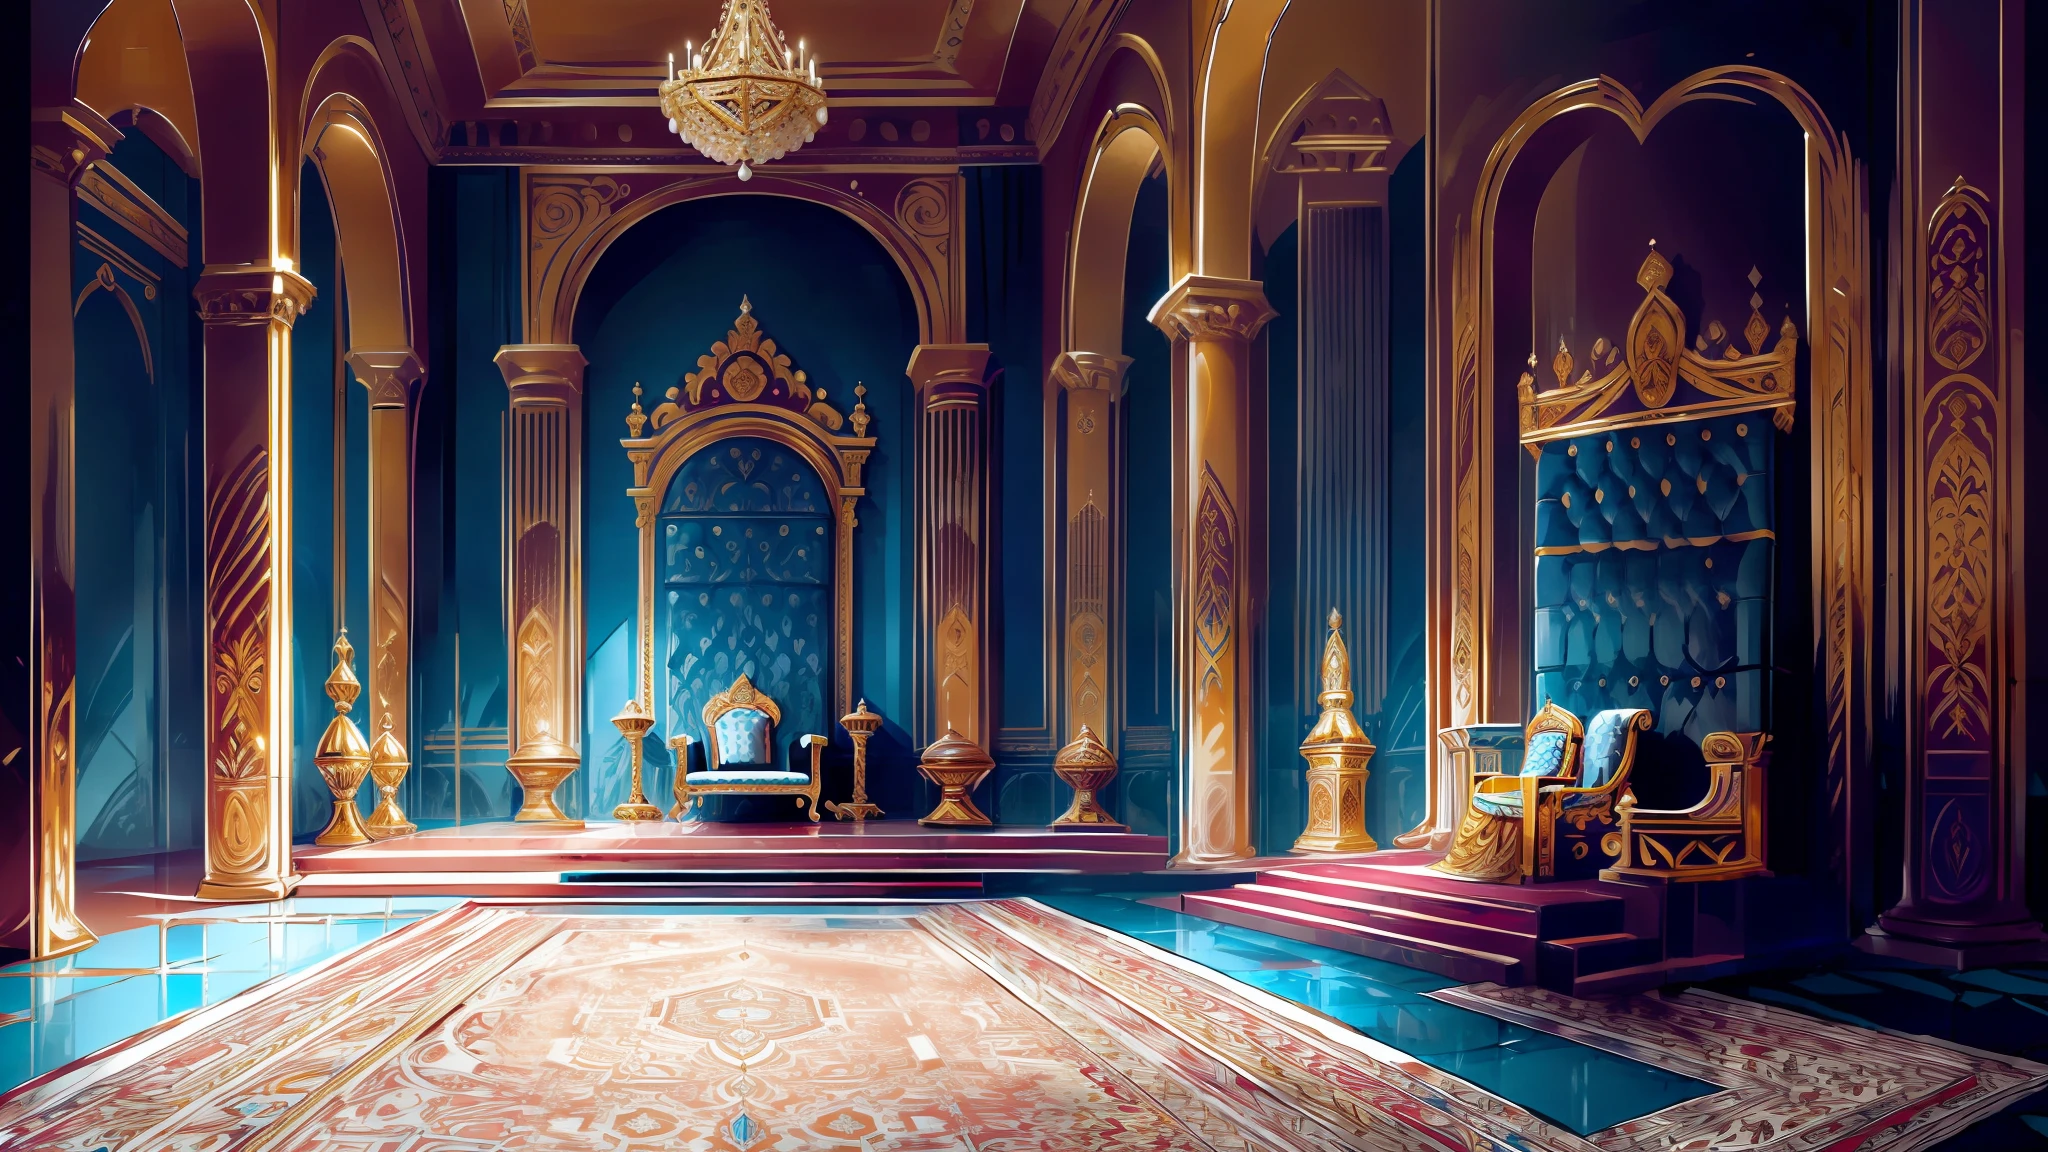 إنشاء ملكة كاملة الطول تجلس على العرش , بجانب الملك الجالس على العرش قصر أبيض, الأزرق والذهبي;